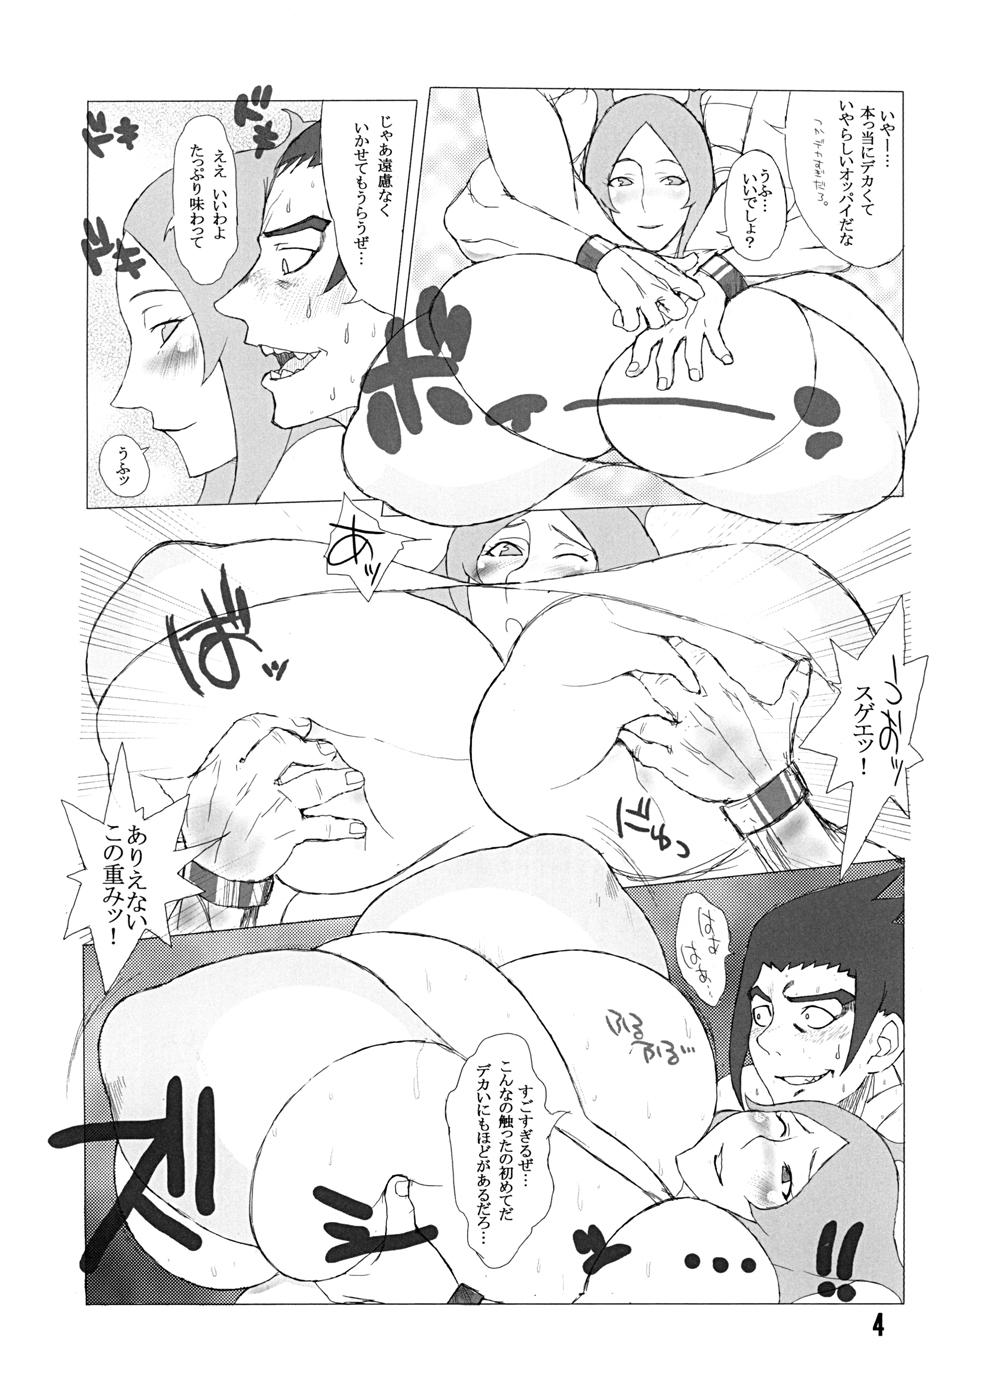 Ruiva Hybrid Tsuushin Zoukangou vol.01 - Queens blade Dragonaut Seikon no qwaser And - Page 4